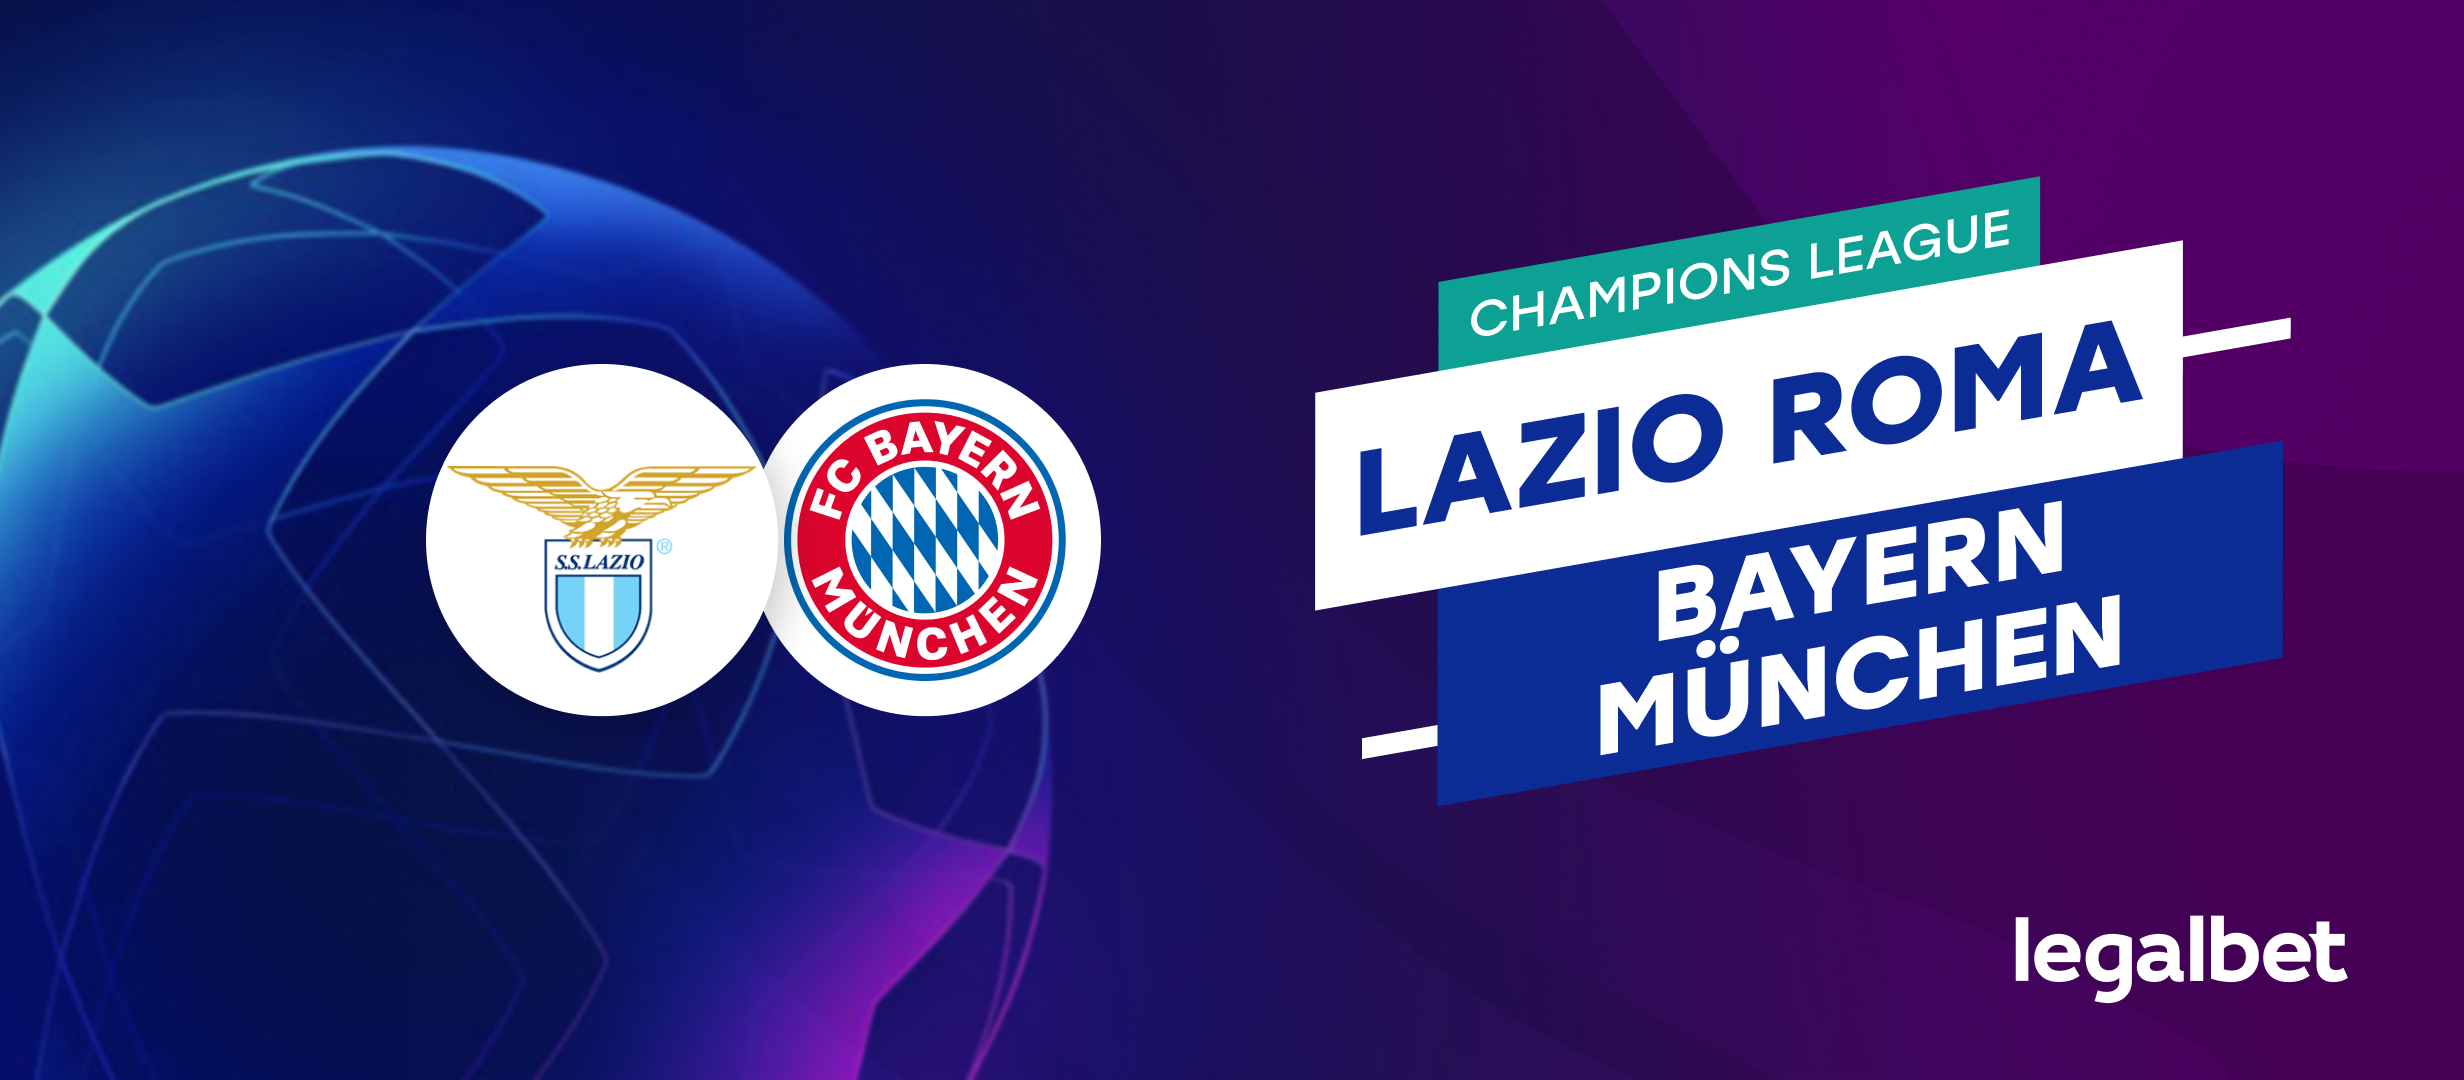 Lazio Roma - Bayern München: Ponturi si cote la pariuri